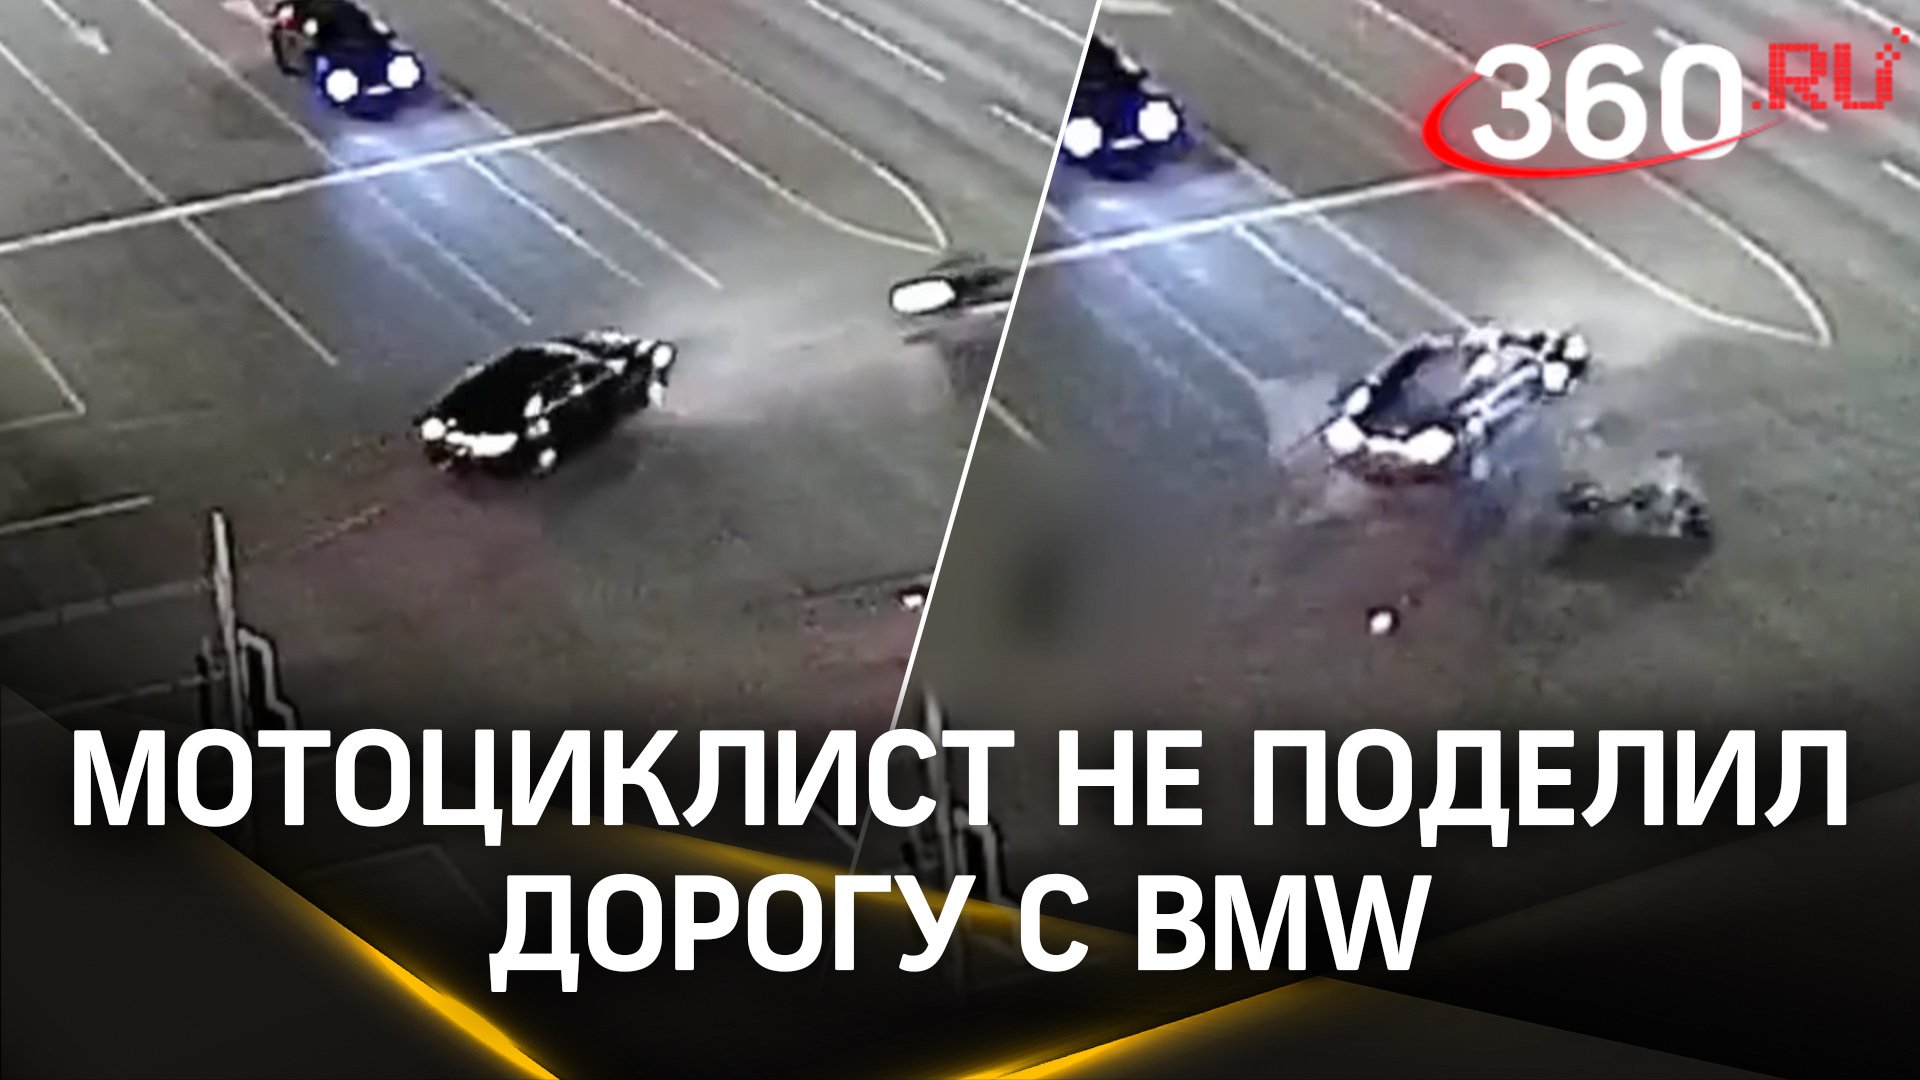 Мотоциклист не поделил дорогу с BMW в Твери и протаранил машину: видео